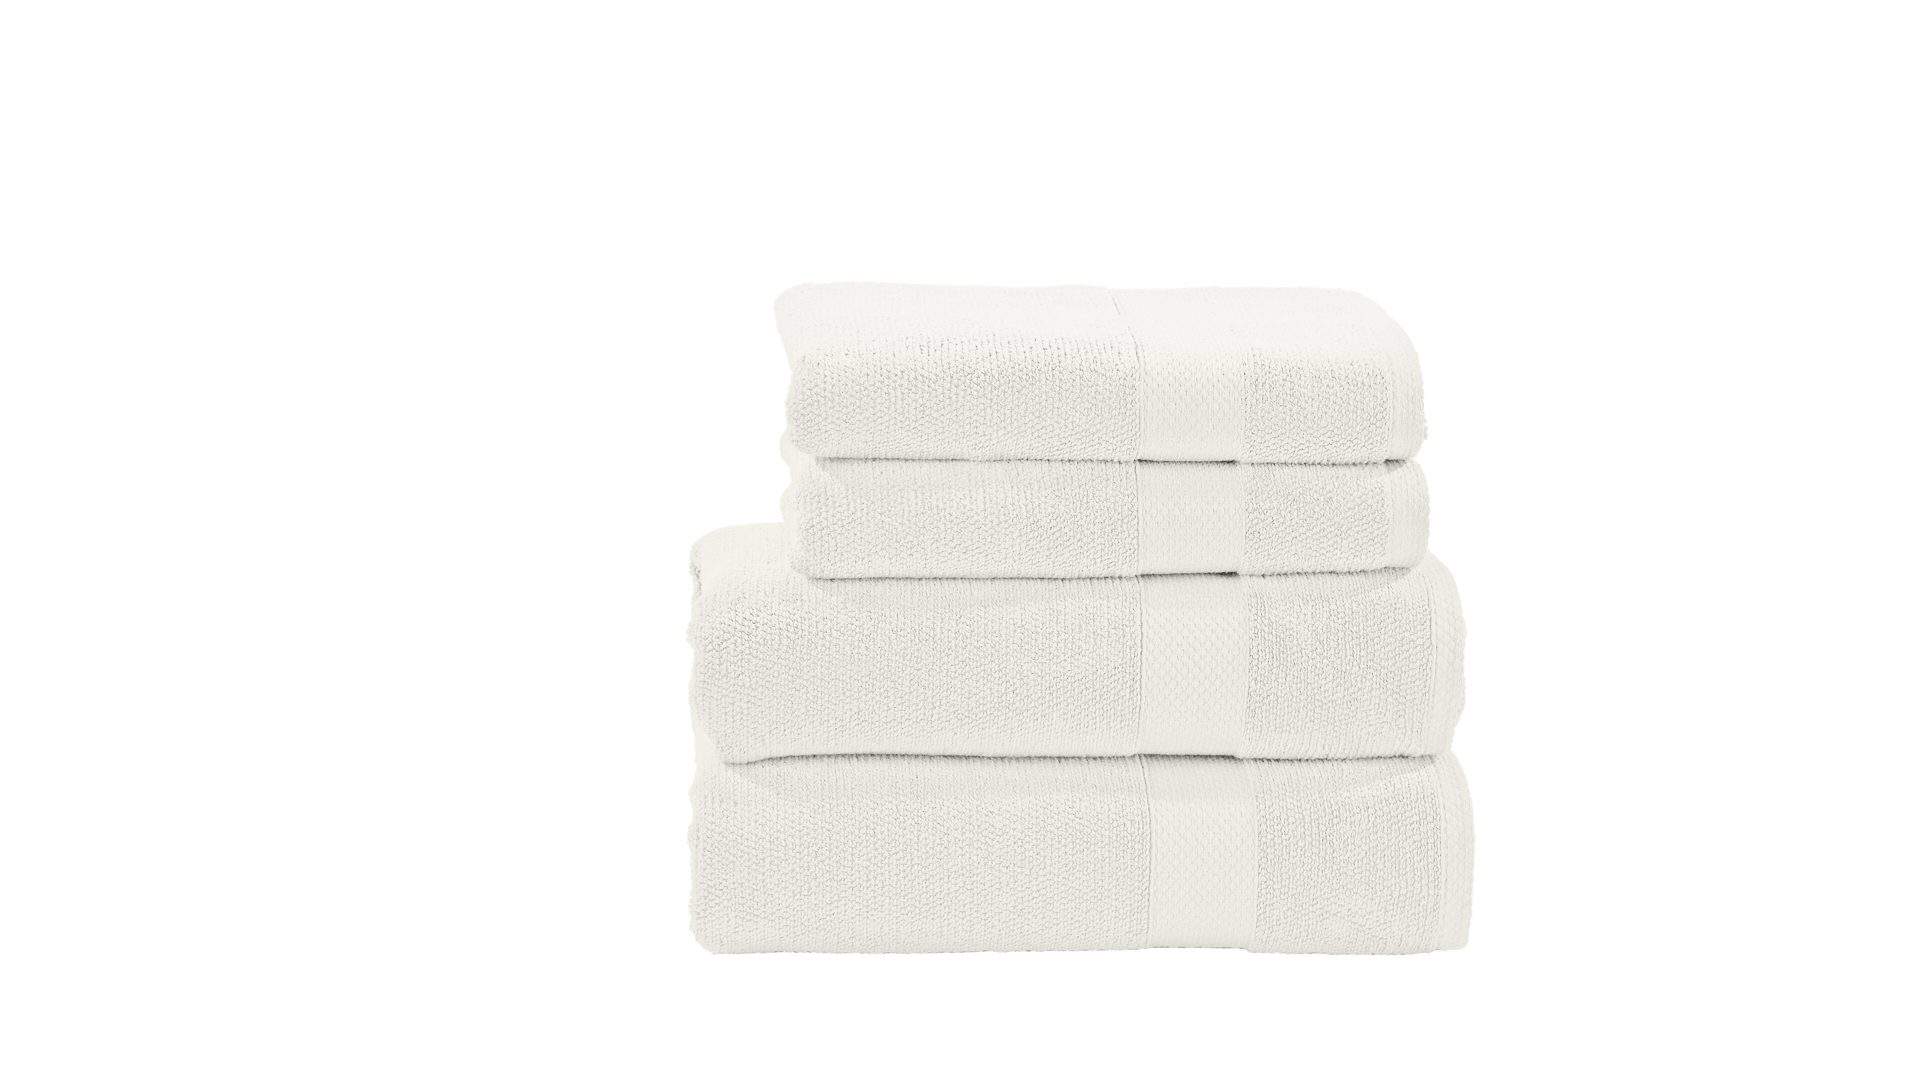 Handtuch-Set Done® be different aus Stoff in Weiß DONE® Handtuch-Set Deluxe weiße Baumwolle – vierteilig